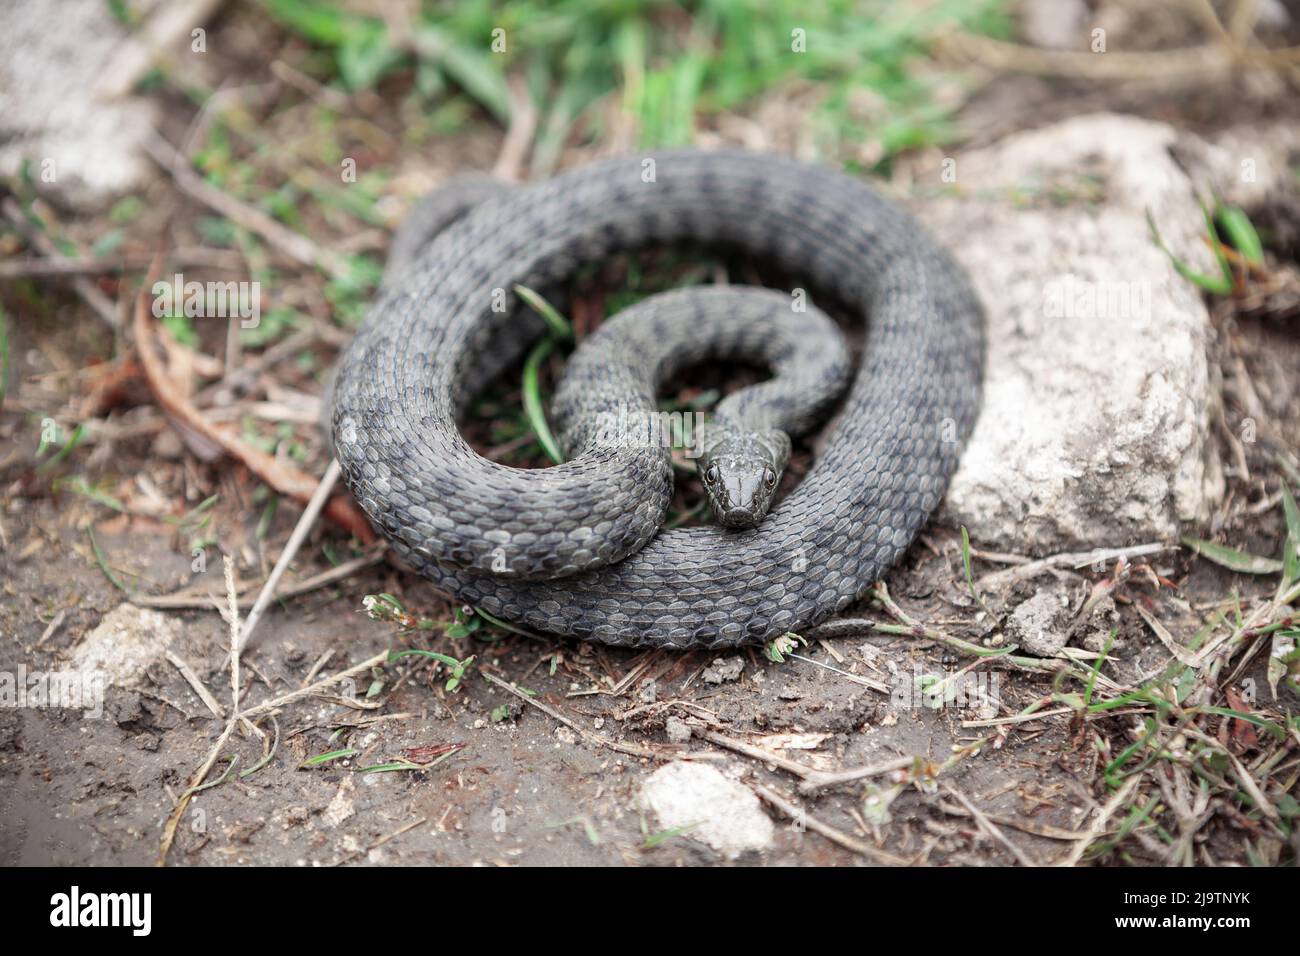 Serpent enroulé sur le sol . Peau de serpent non venimeuse Diamondback Water Banque D'Images